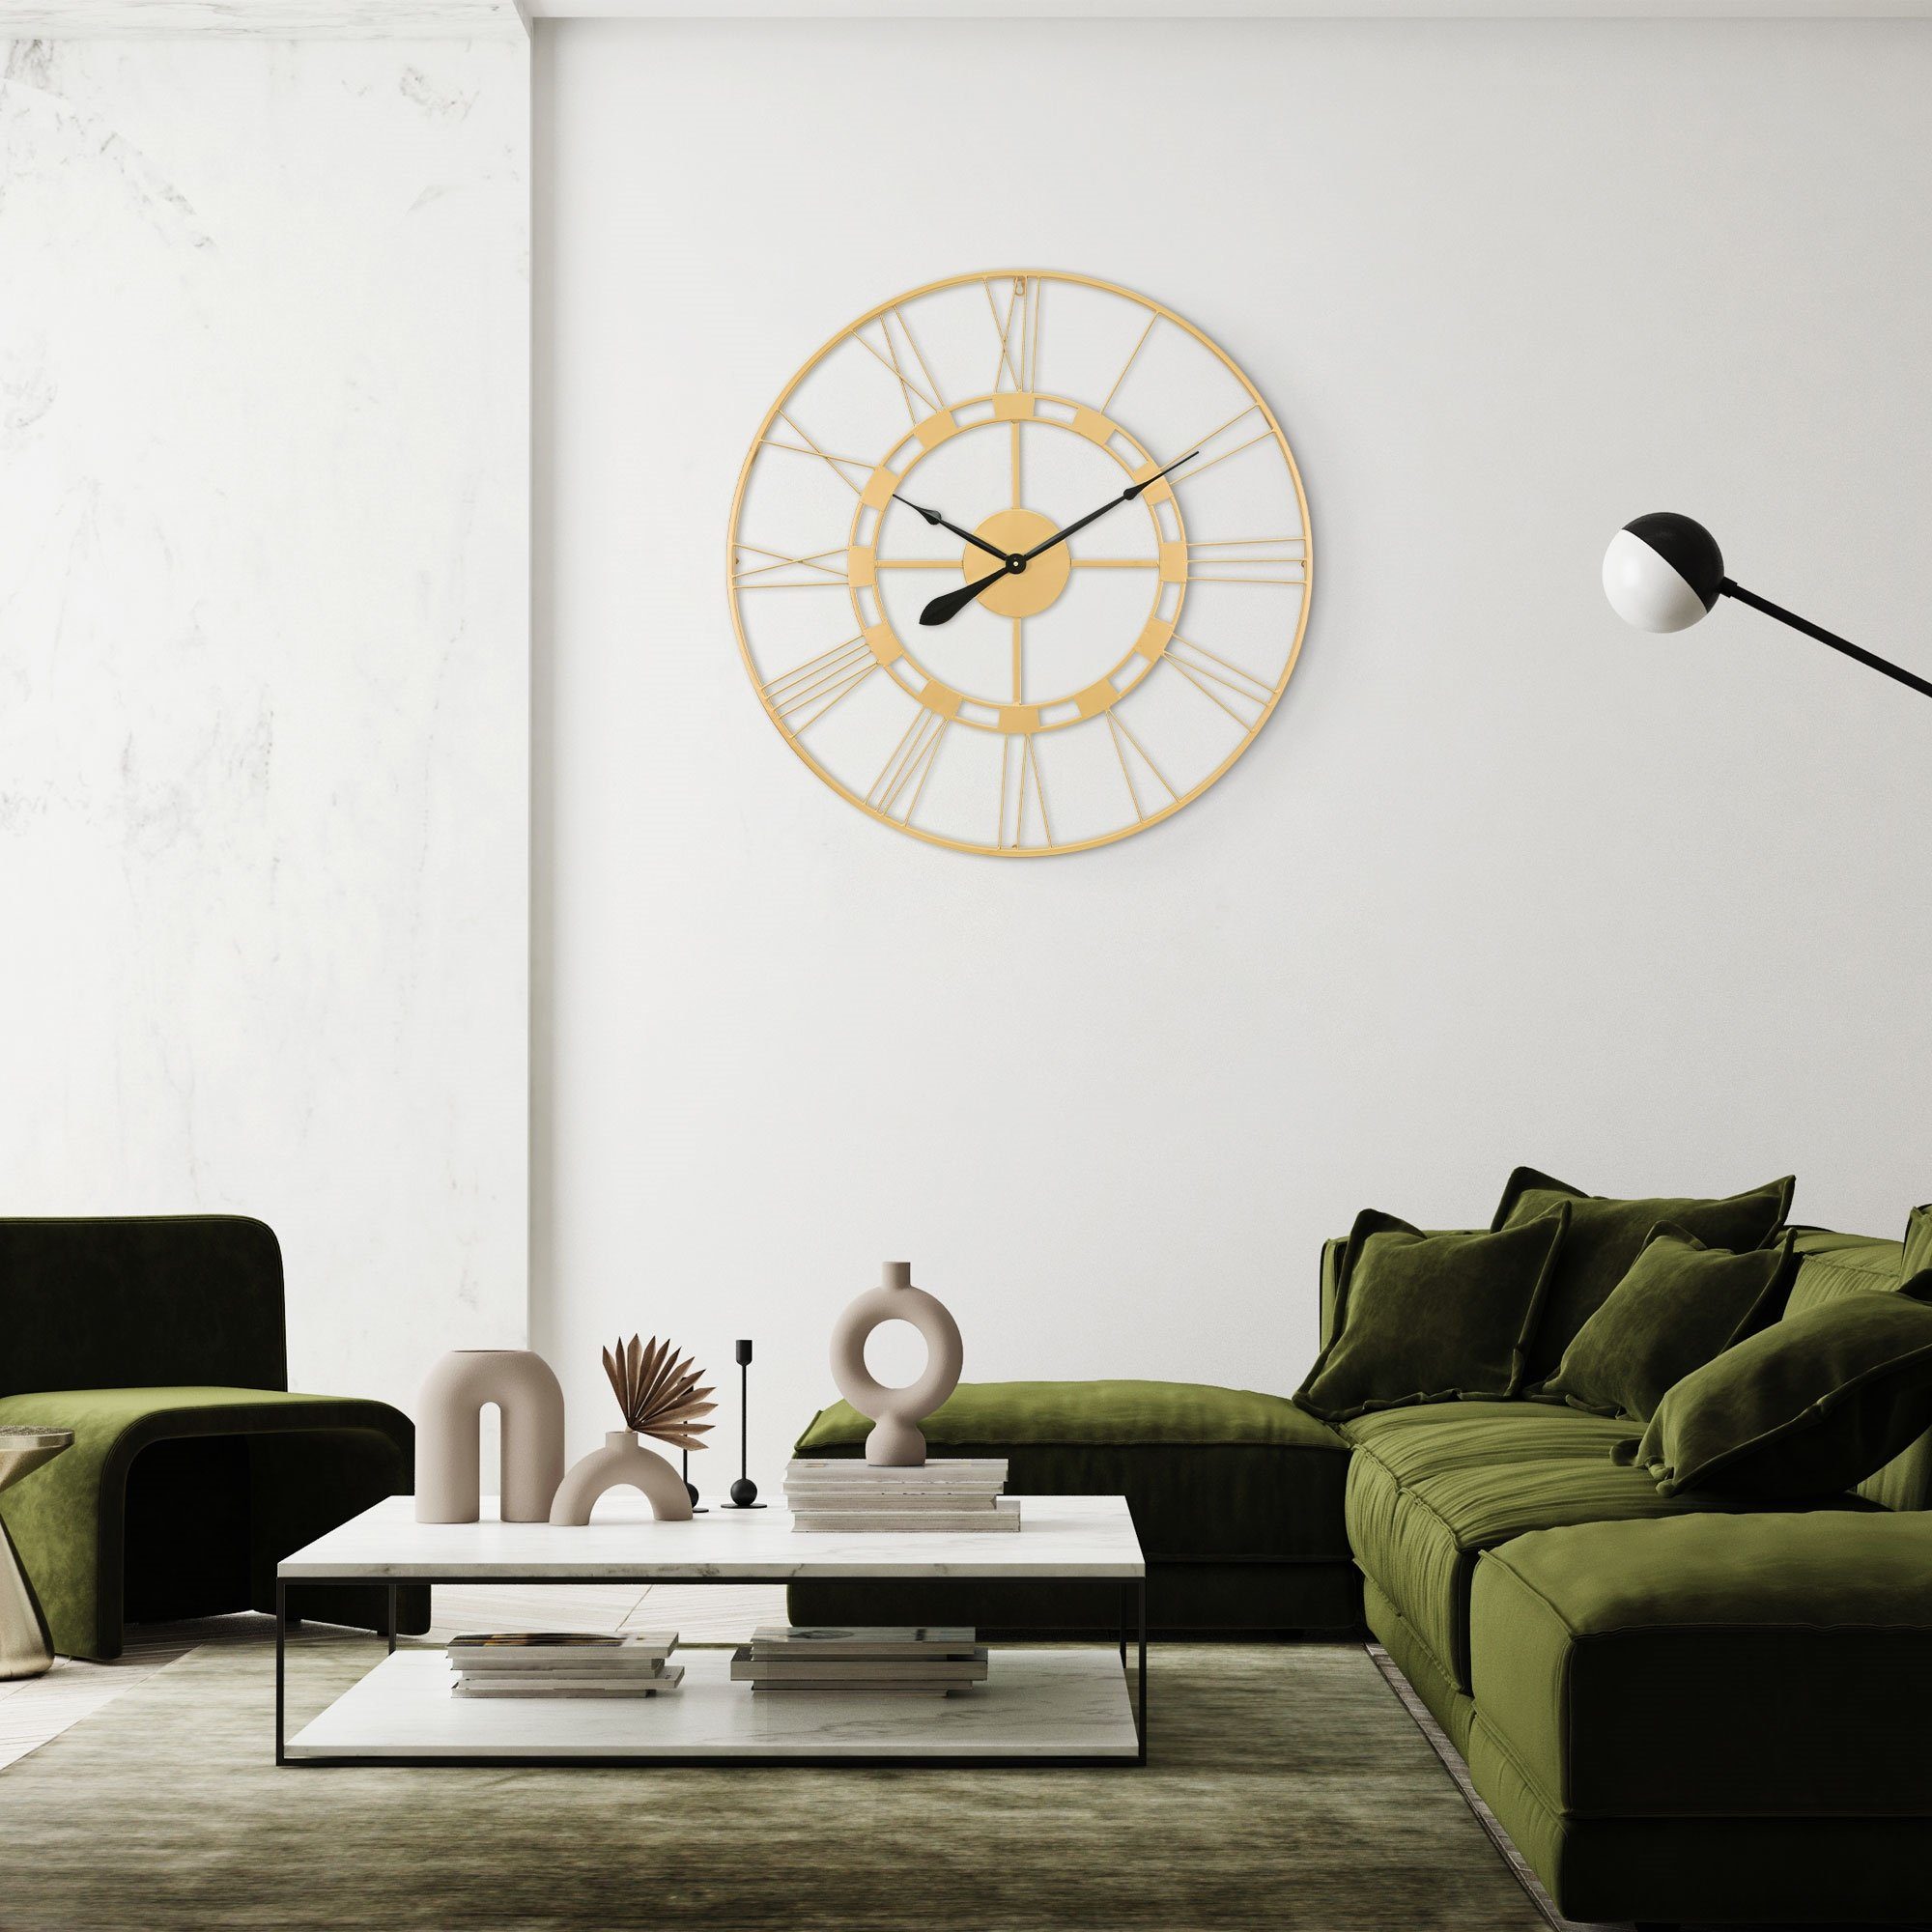 Design (Altgold Unikat Wanduhr Eisen Uhr Uhr rund Dekorative Dekouhr Stockholm handgefertigt WOMO-DESIGN Ø85cm Vintage-Stil) im